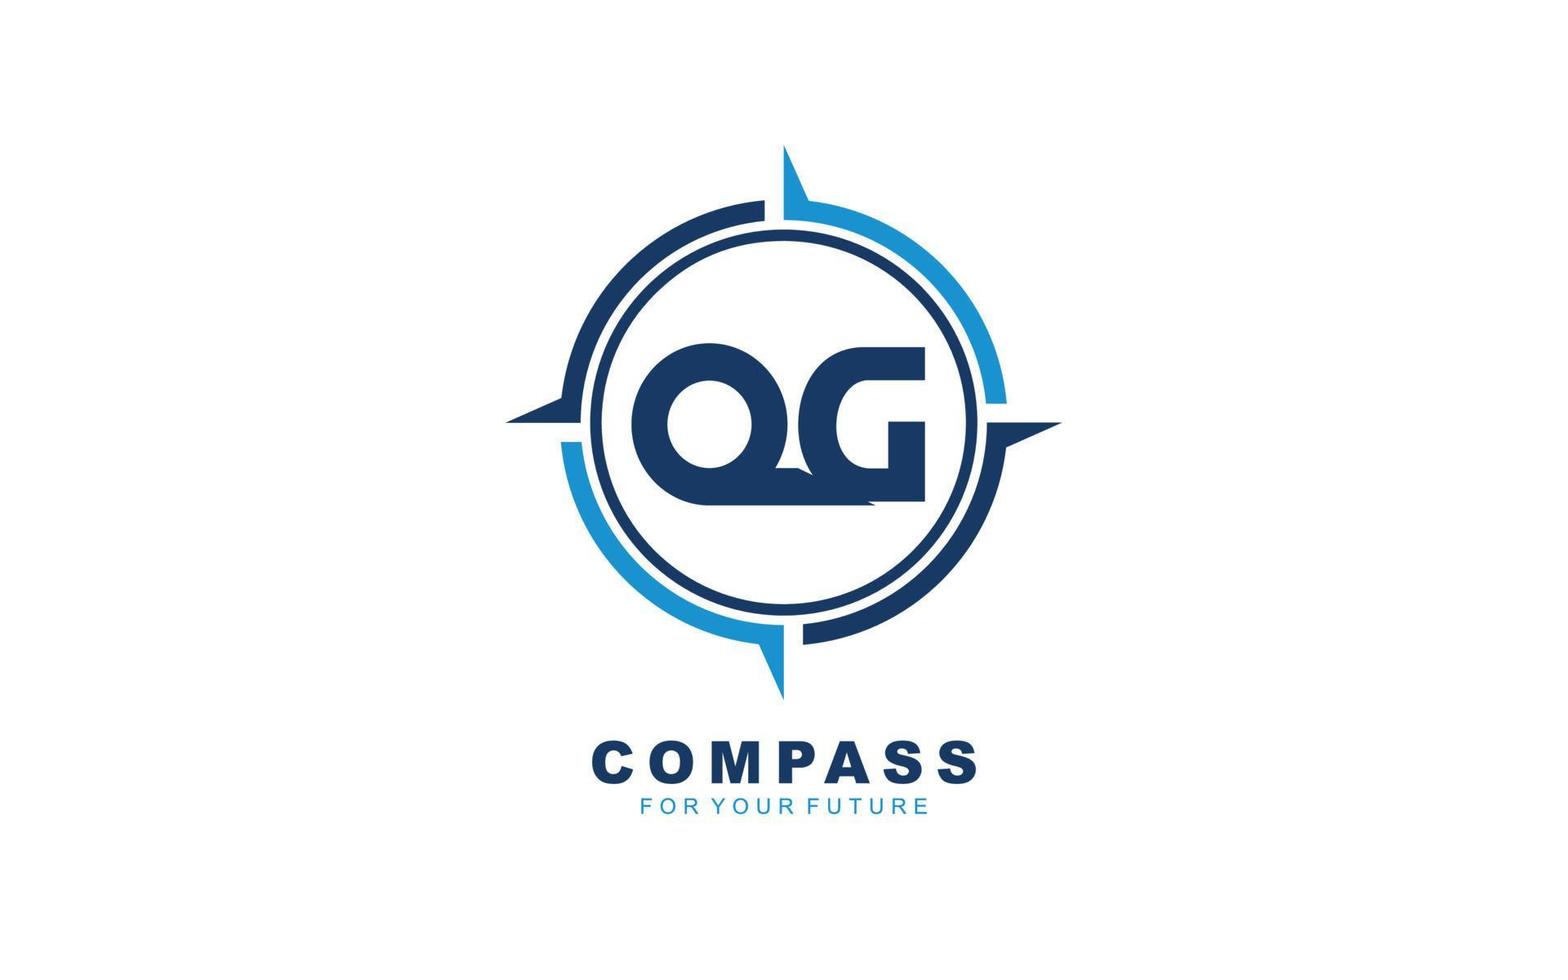 qg-Logo-Navigation für Branding-Unternehmen. Kompass-Vorlage, Vektorgrafik für Ihre Marke. vektor